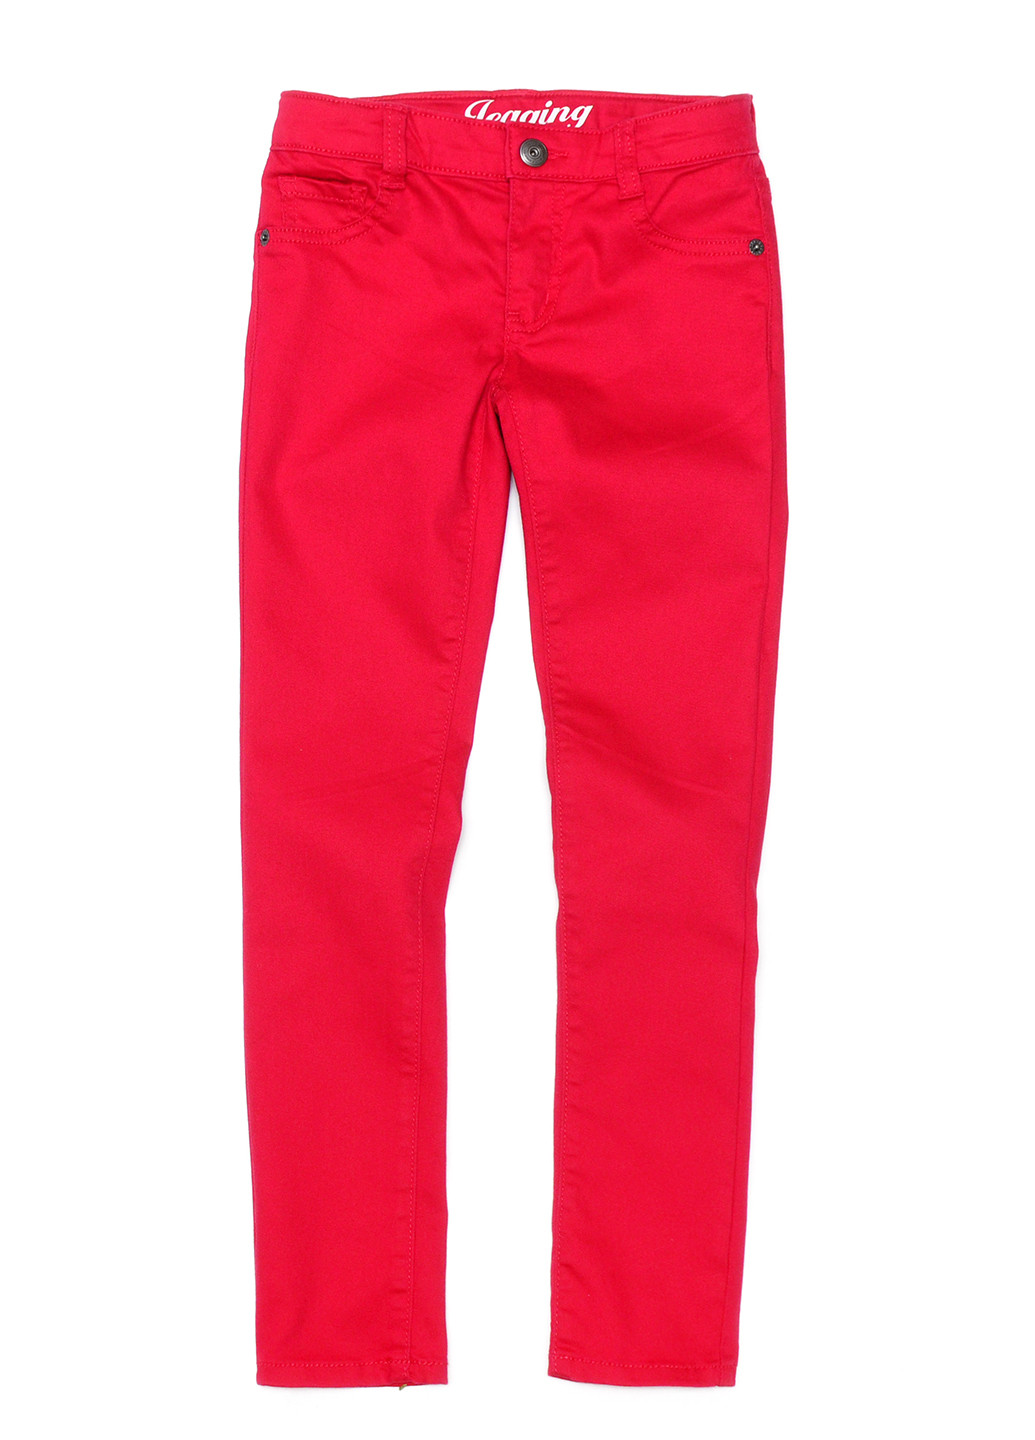 Красные кэжуал демисезонные со средней талией брюки Crazy 8